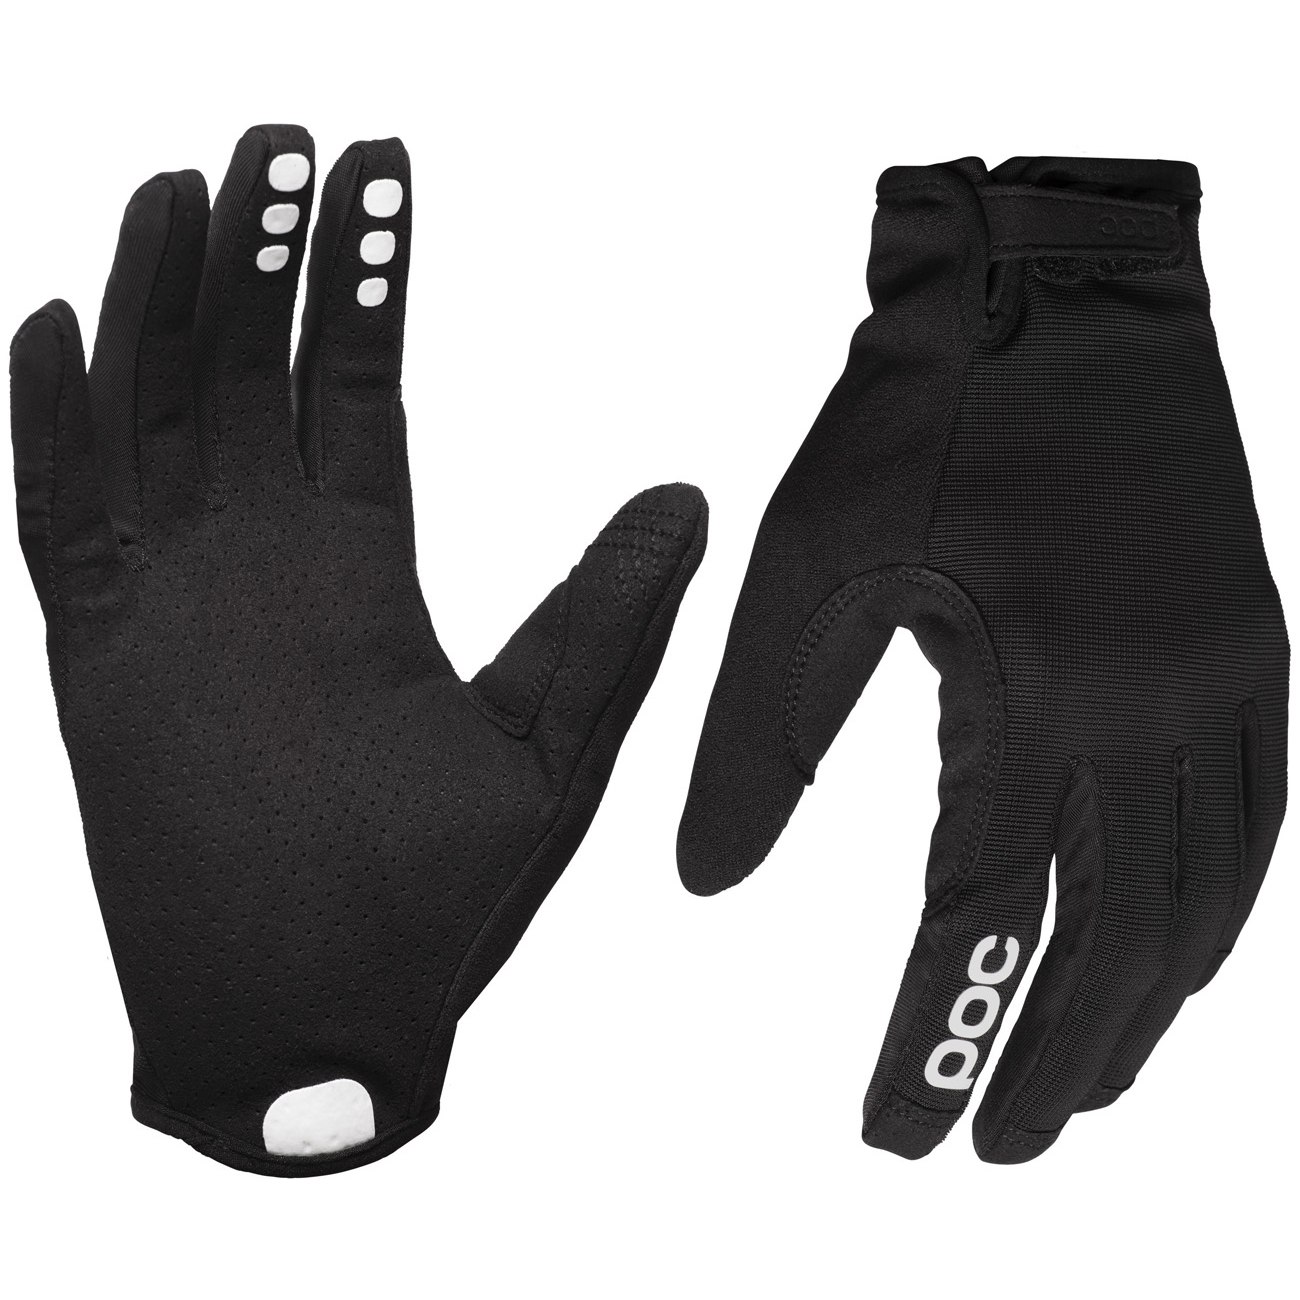 Productfoto van POC Resistance Enduro Adjustable Handschoenen - 8204 Uranium black/Uranium Black